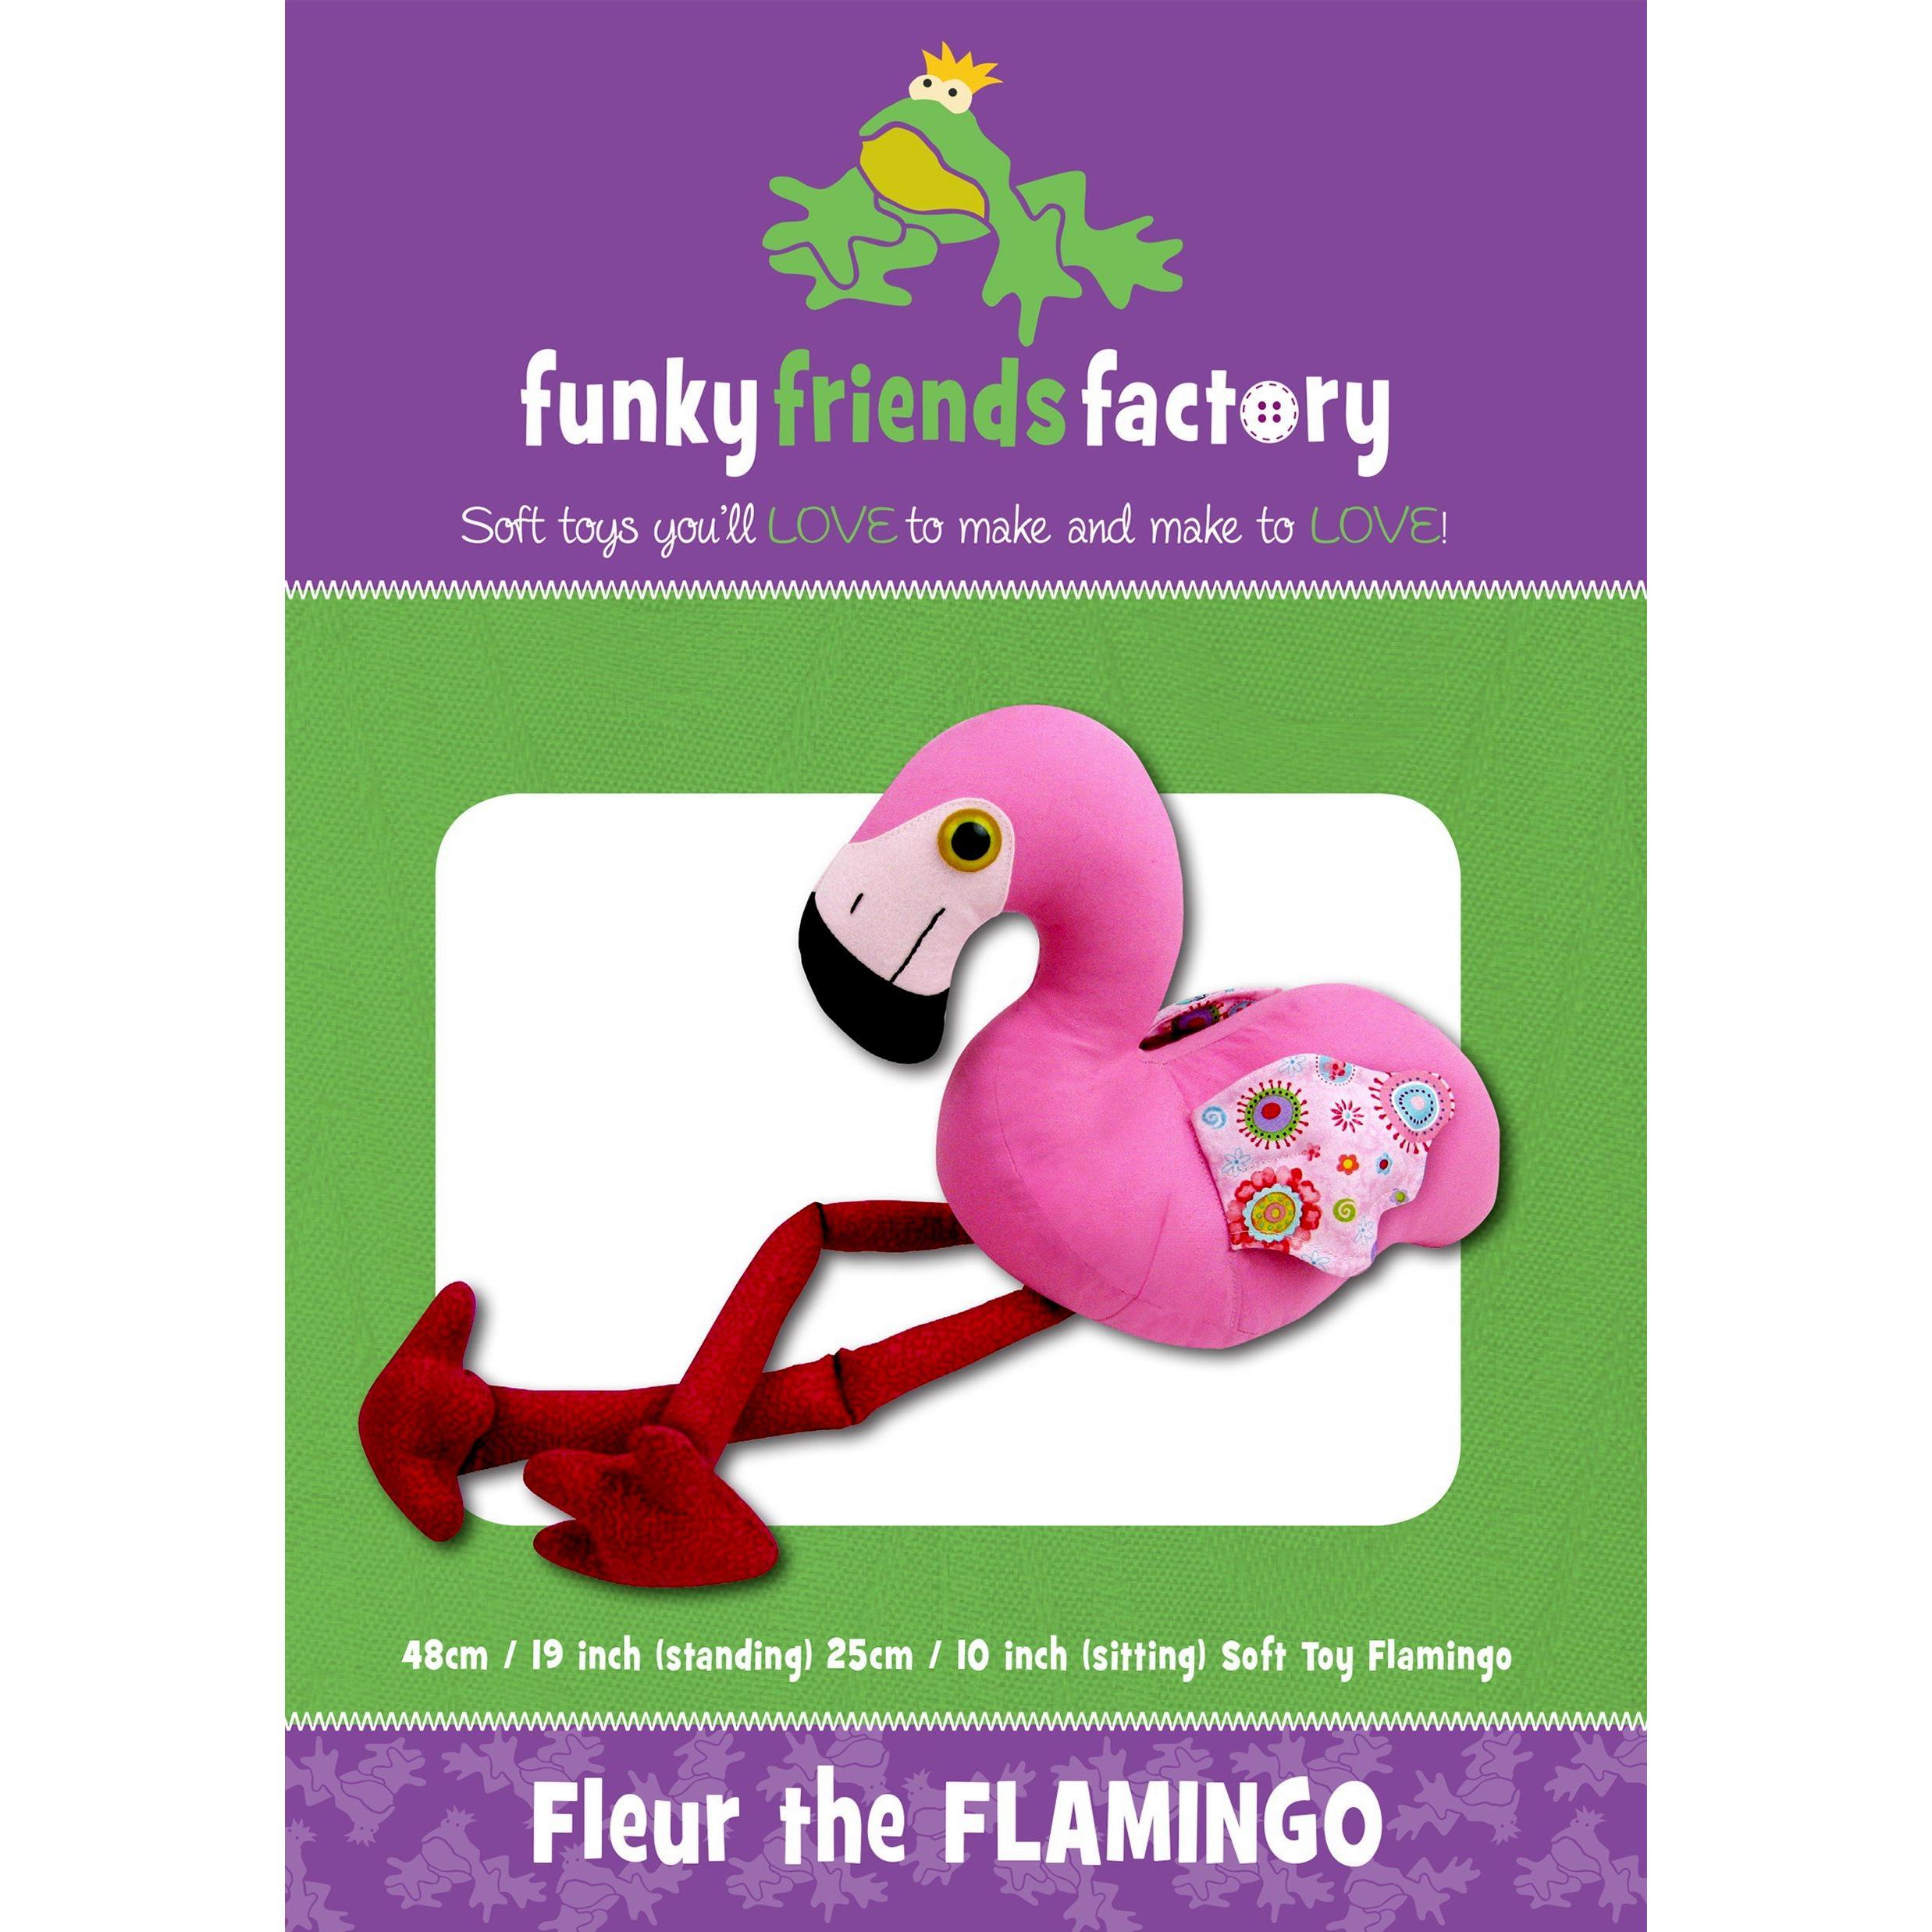 Fleur Flamingo Funky Friends Factory Pattern